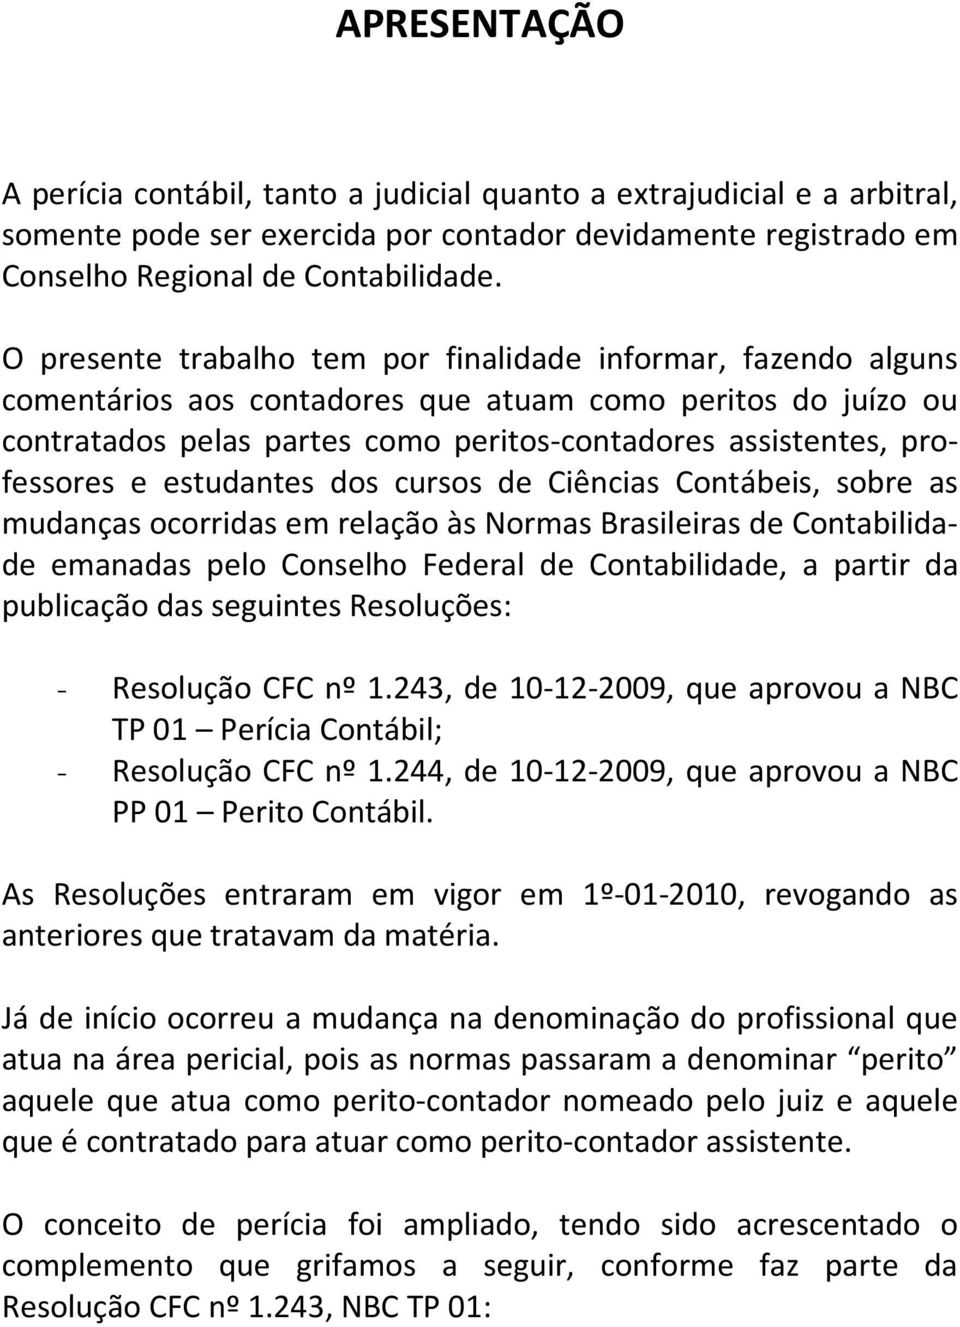 e estudantes dos cursos de Ciências Contábeis, sobre as mudanças ocorridas em relação às Normas Brasileiras de Contabilidade emanadas pelo Conselho Federal de Contabilidade, a partir da publicação